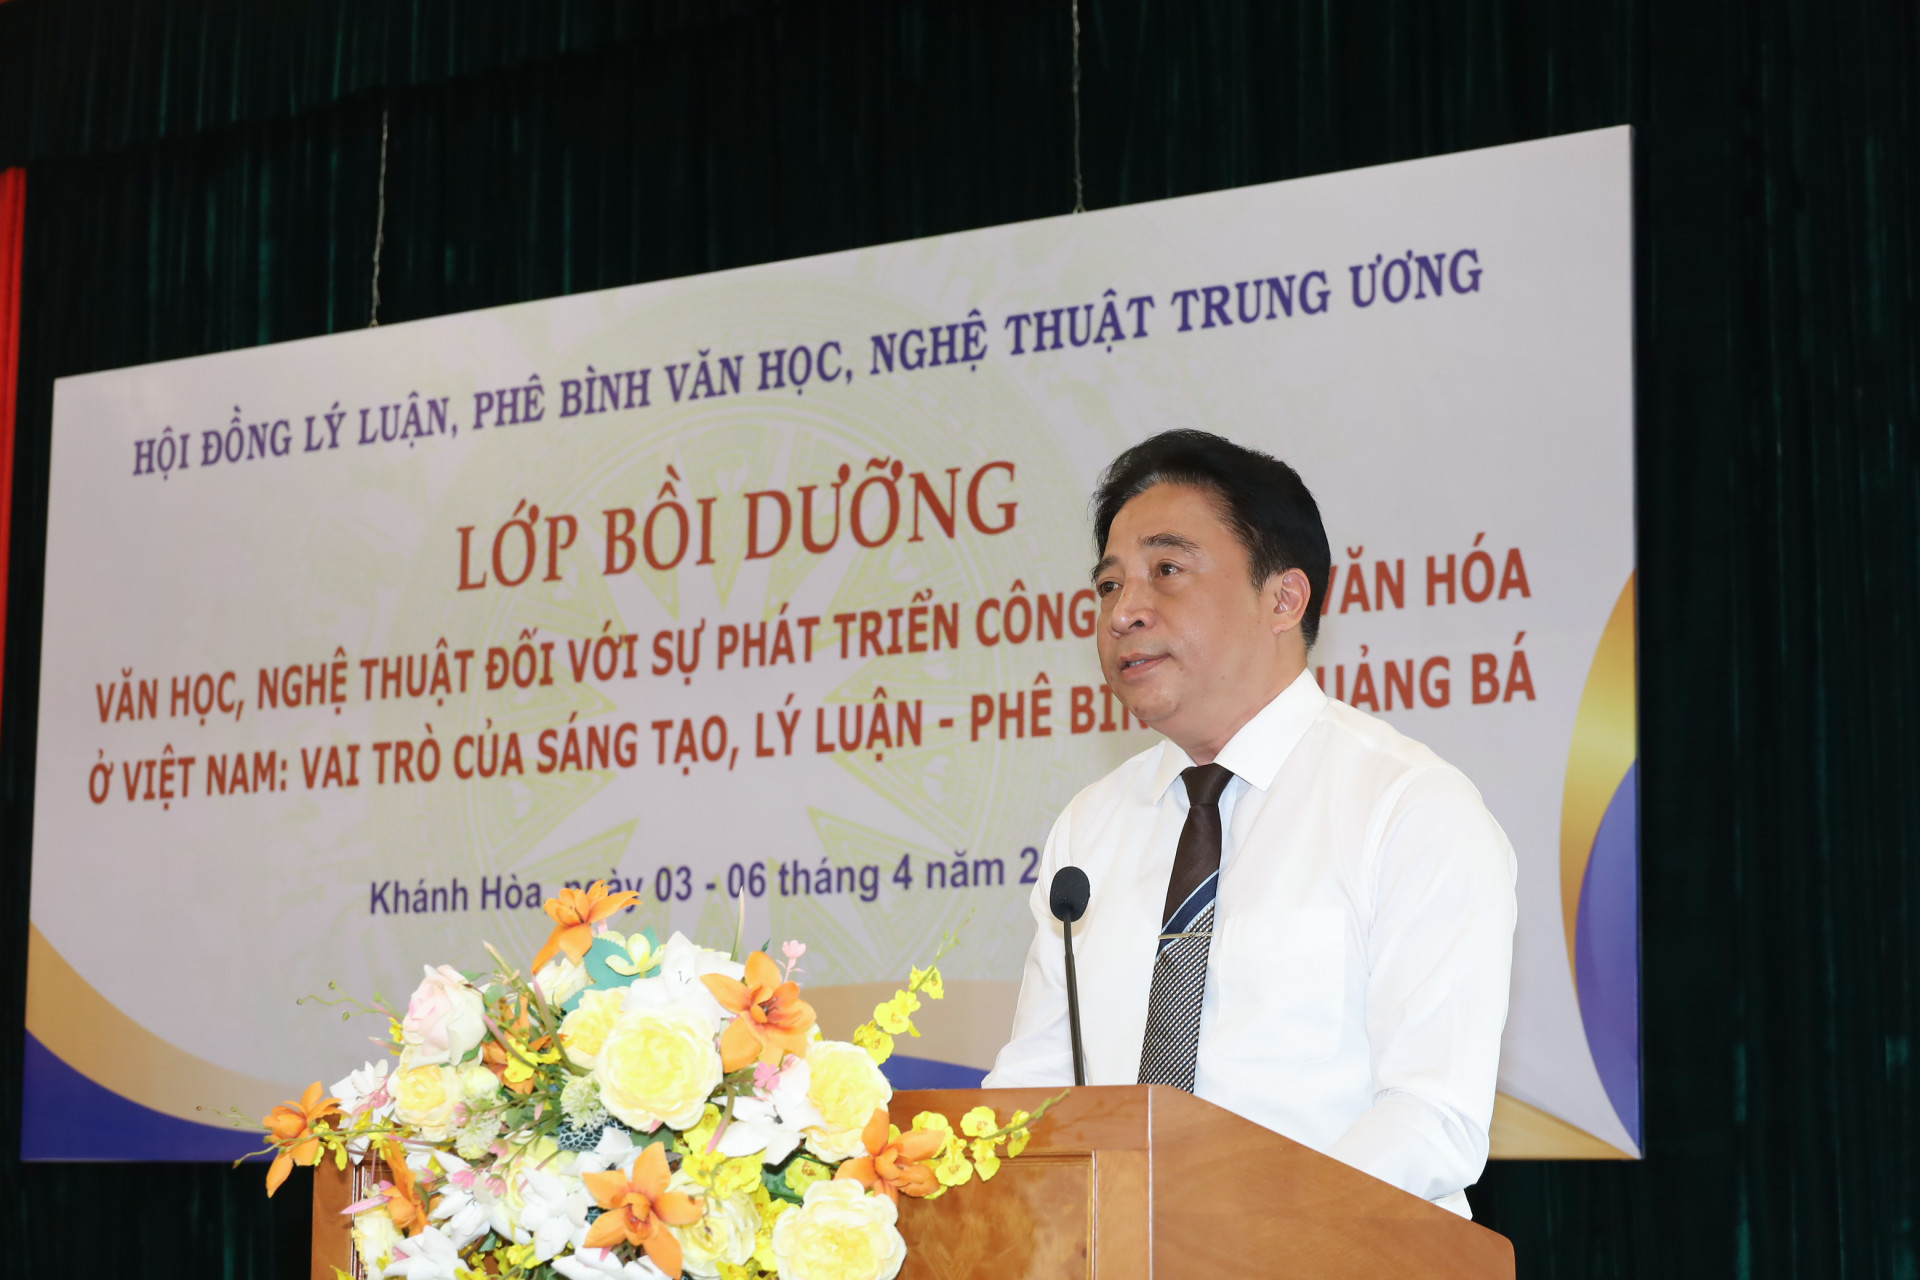 Đồng chí Nguyễn Khắc Toàn phát biểu tại lễ khai mạc lớp bồi dưỡng văn học nghệ thuật.